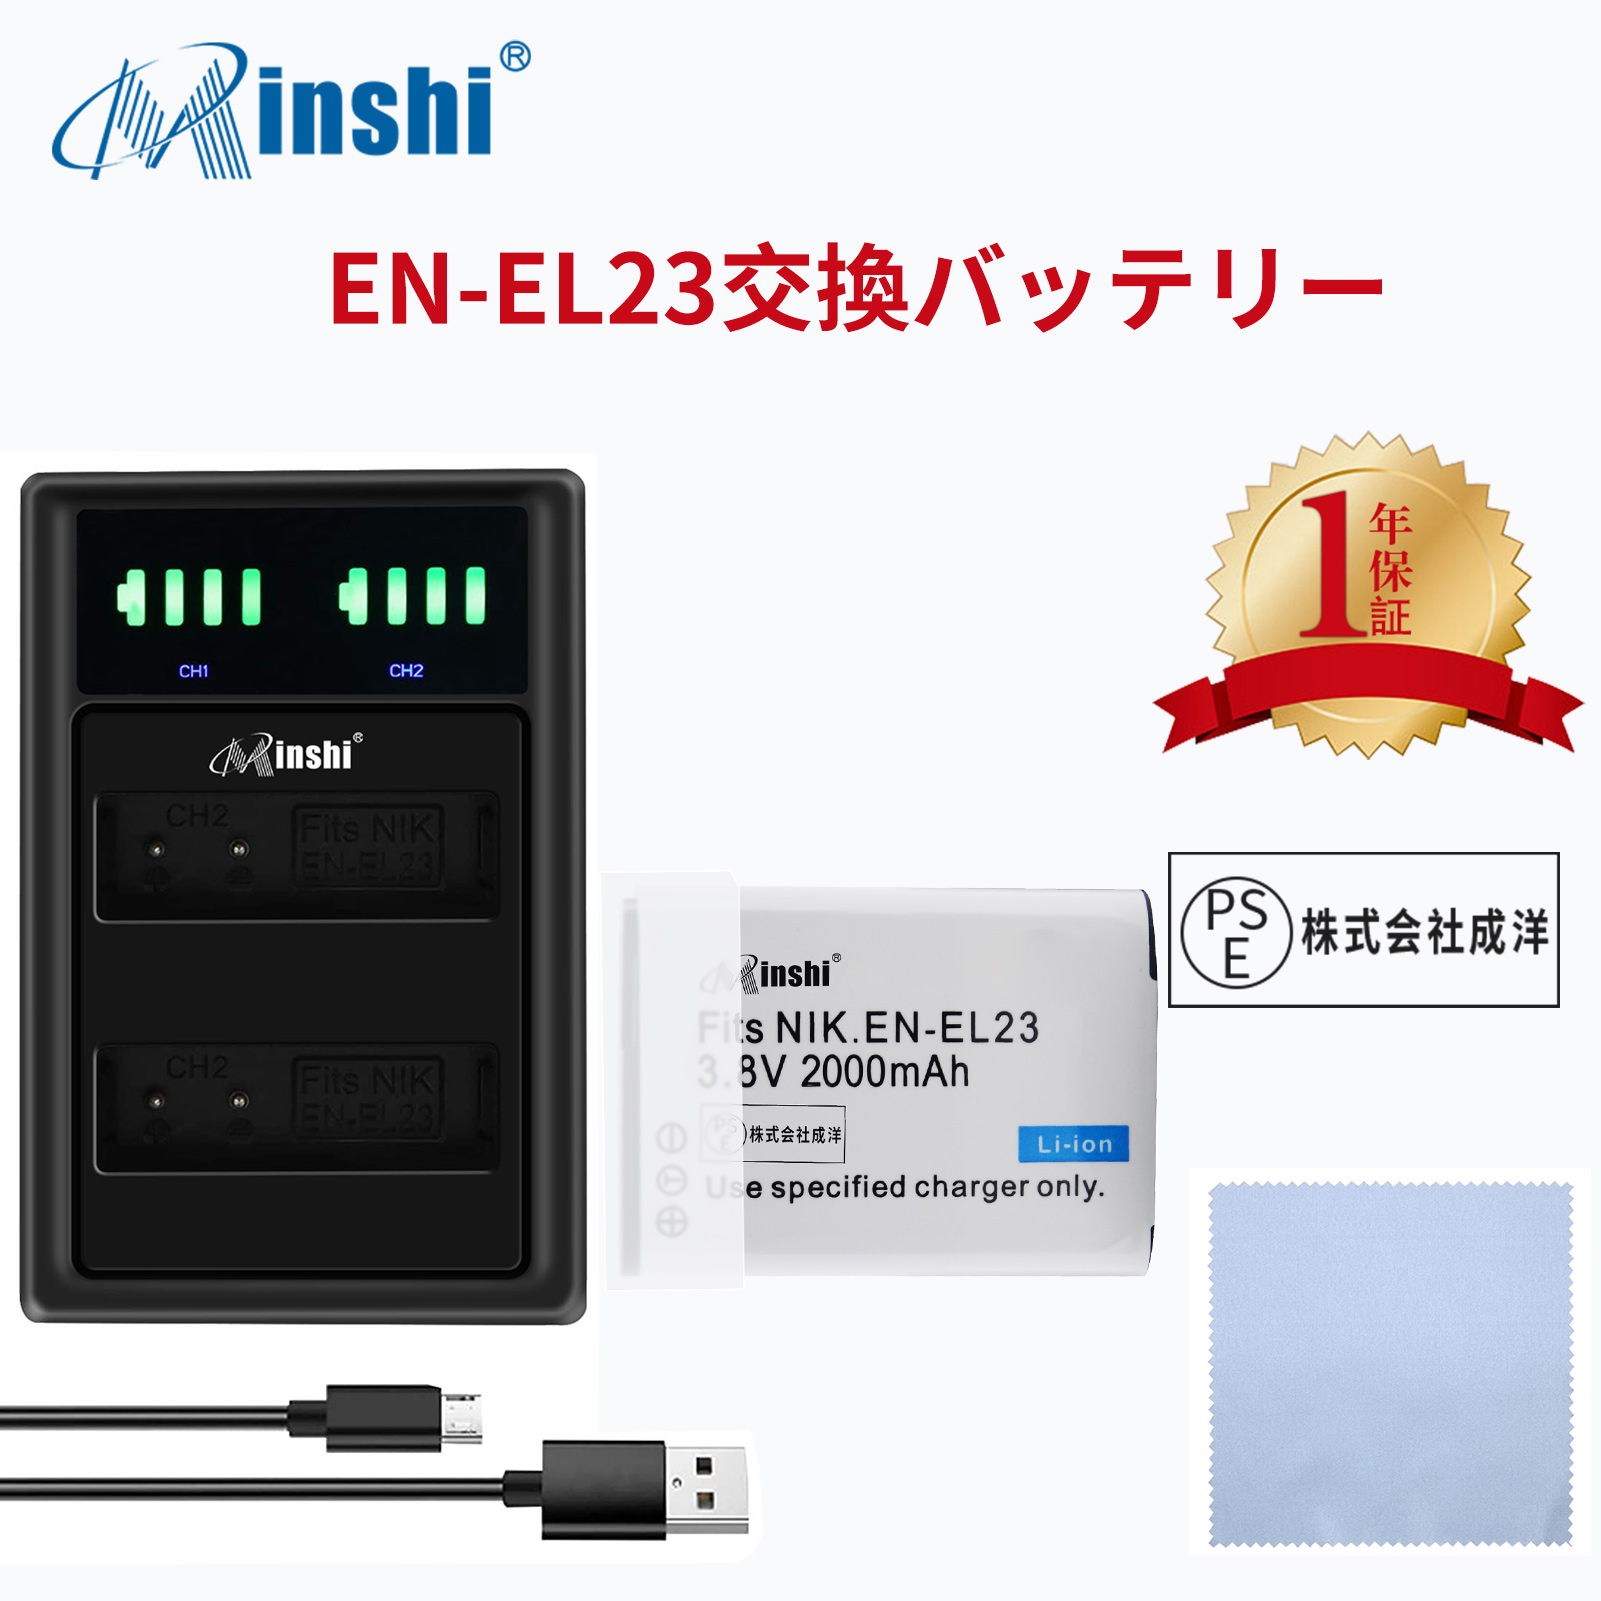 【セット】NIKON  P600 B700 対応  互換バッテリー 2000mAh PSE認定済  Coolpix P600 P900 高品質 EN-EL23 交換用バッテリー